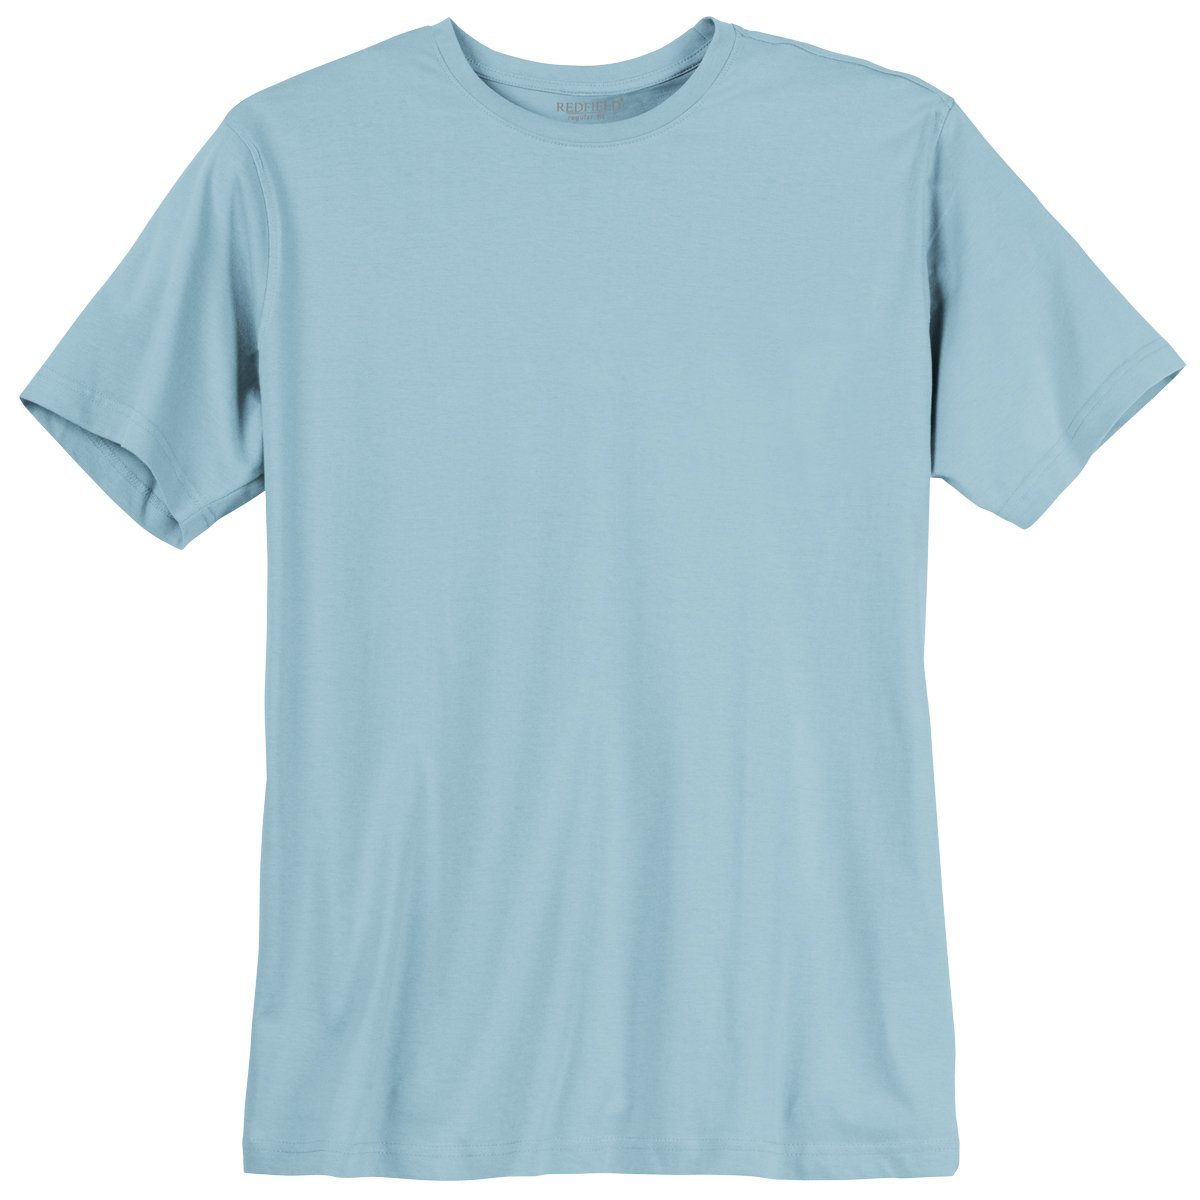 redfield Rundhalsshirt Große Größen Herren Redfield T-Shirt hellblau Modell Tom